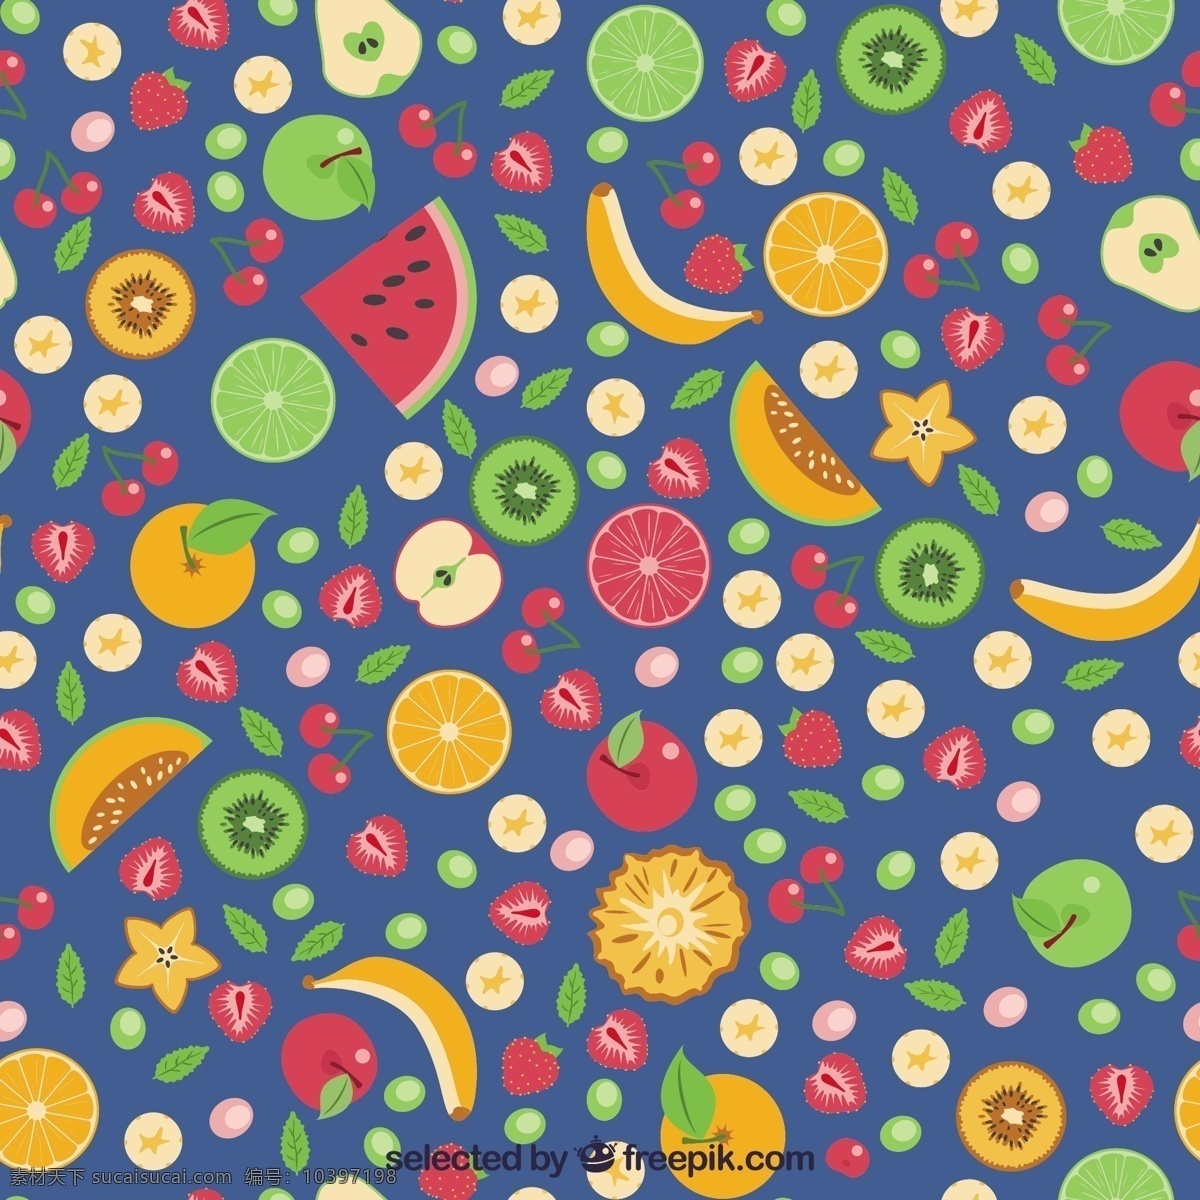 五颜六色 水果 图案 模式 食品 健康 苹果 香蕉 丰富多彩的 健康的 樱桃 健康食品 有机食品 西瓜 猕猴桃 菠萝 蓝色